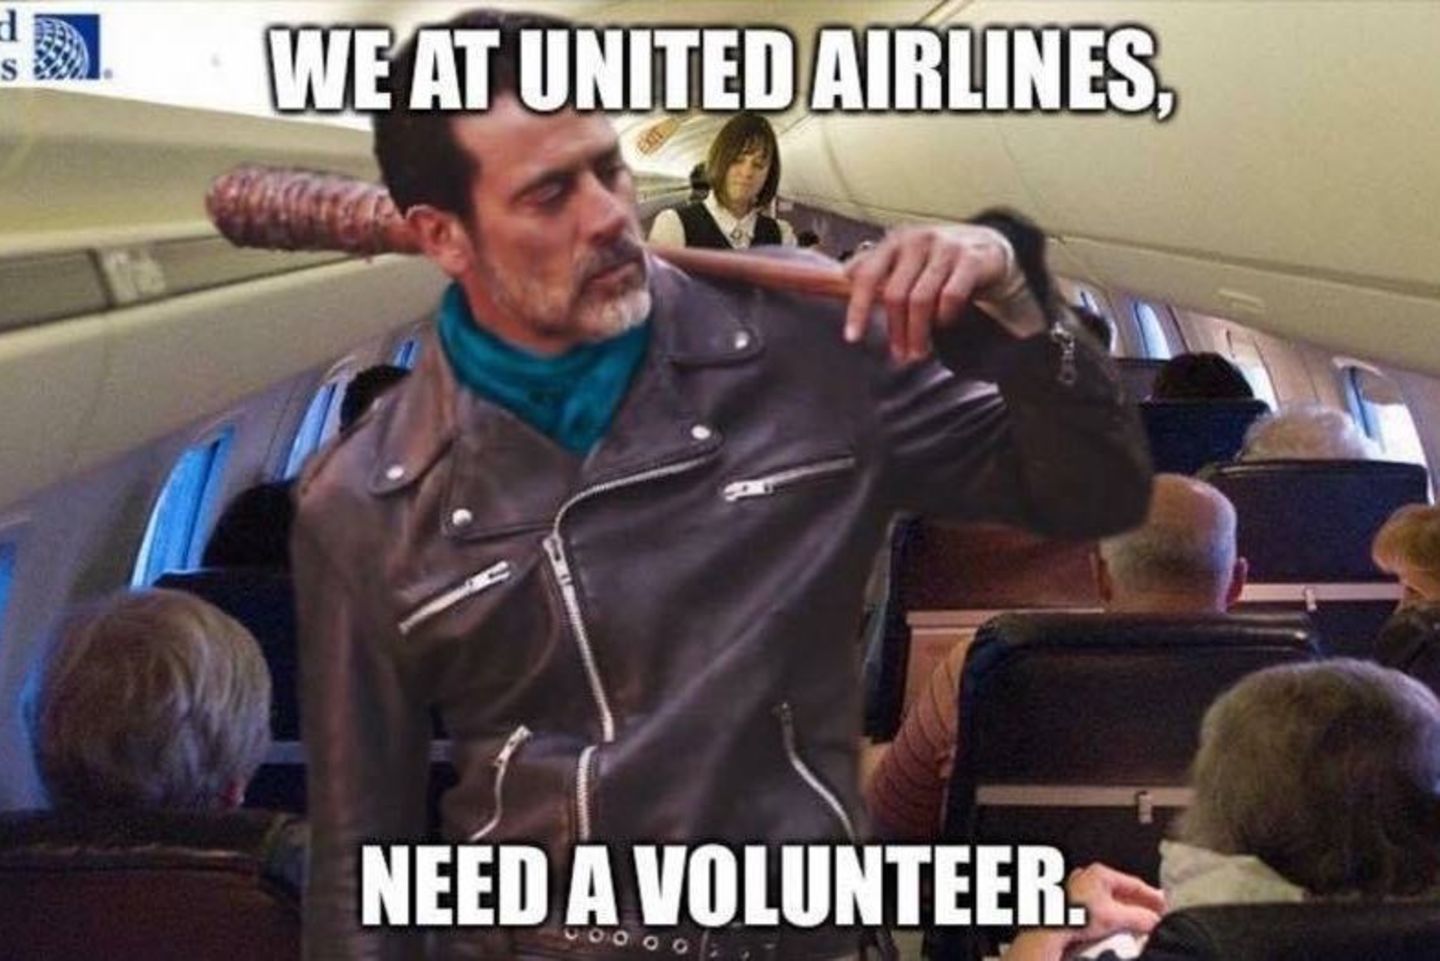 Eines von vielen Reaktionen auf den Vorfall bei United Airlines